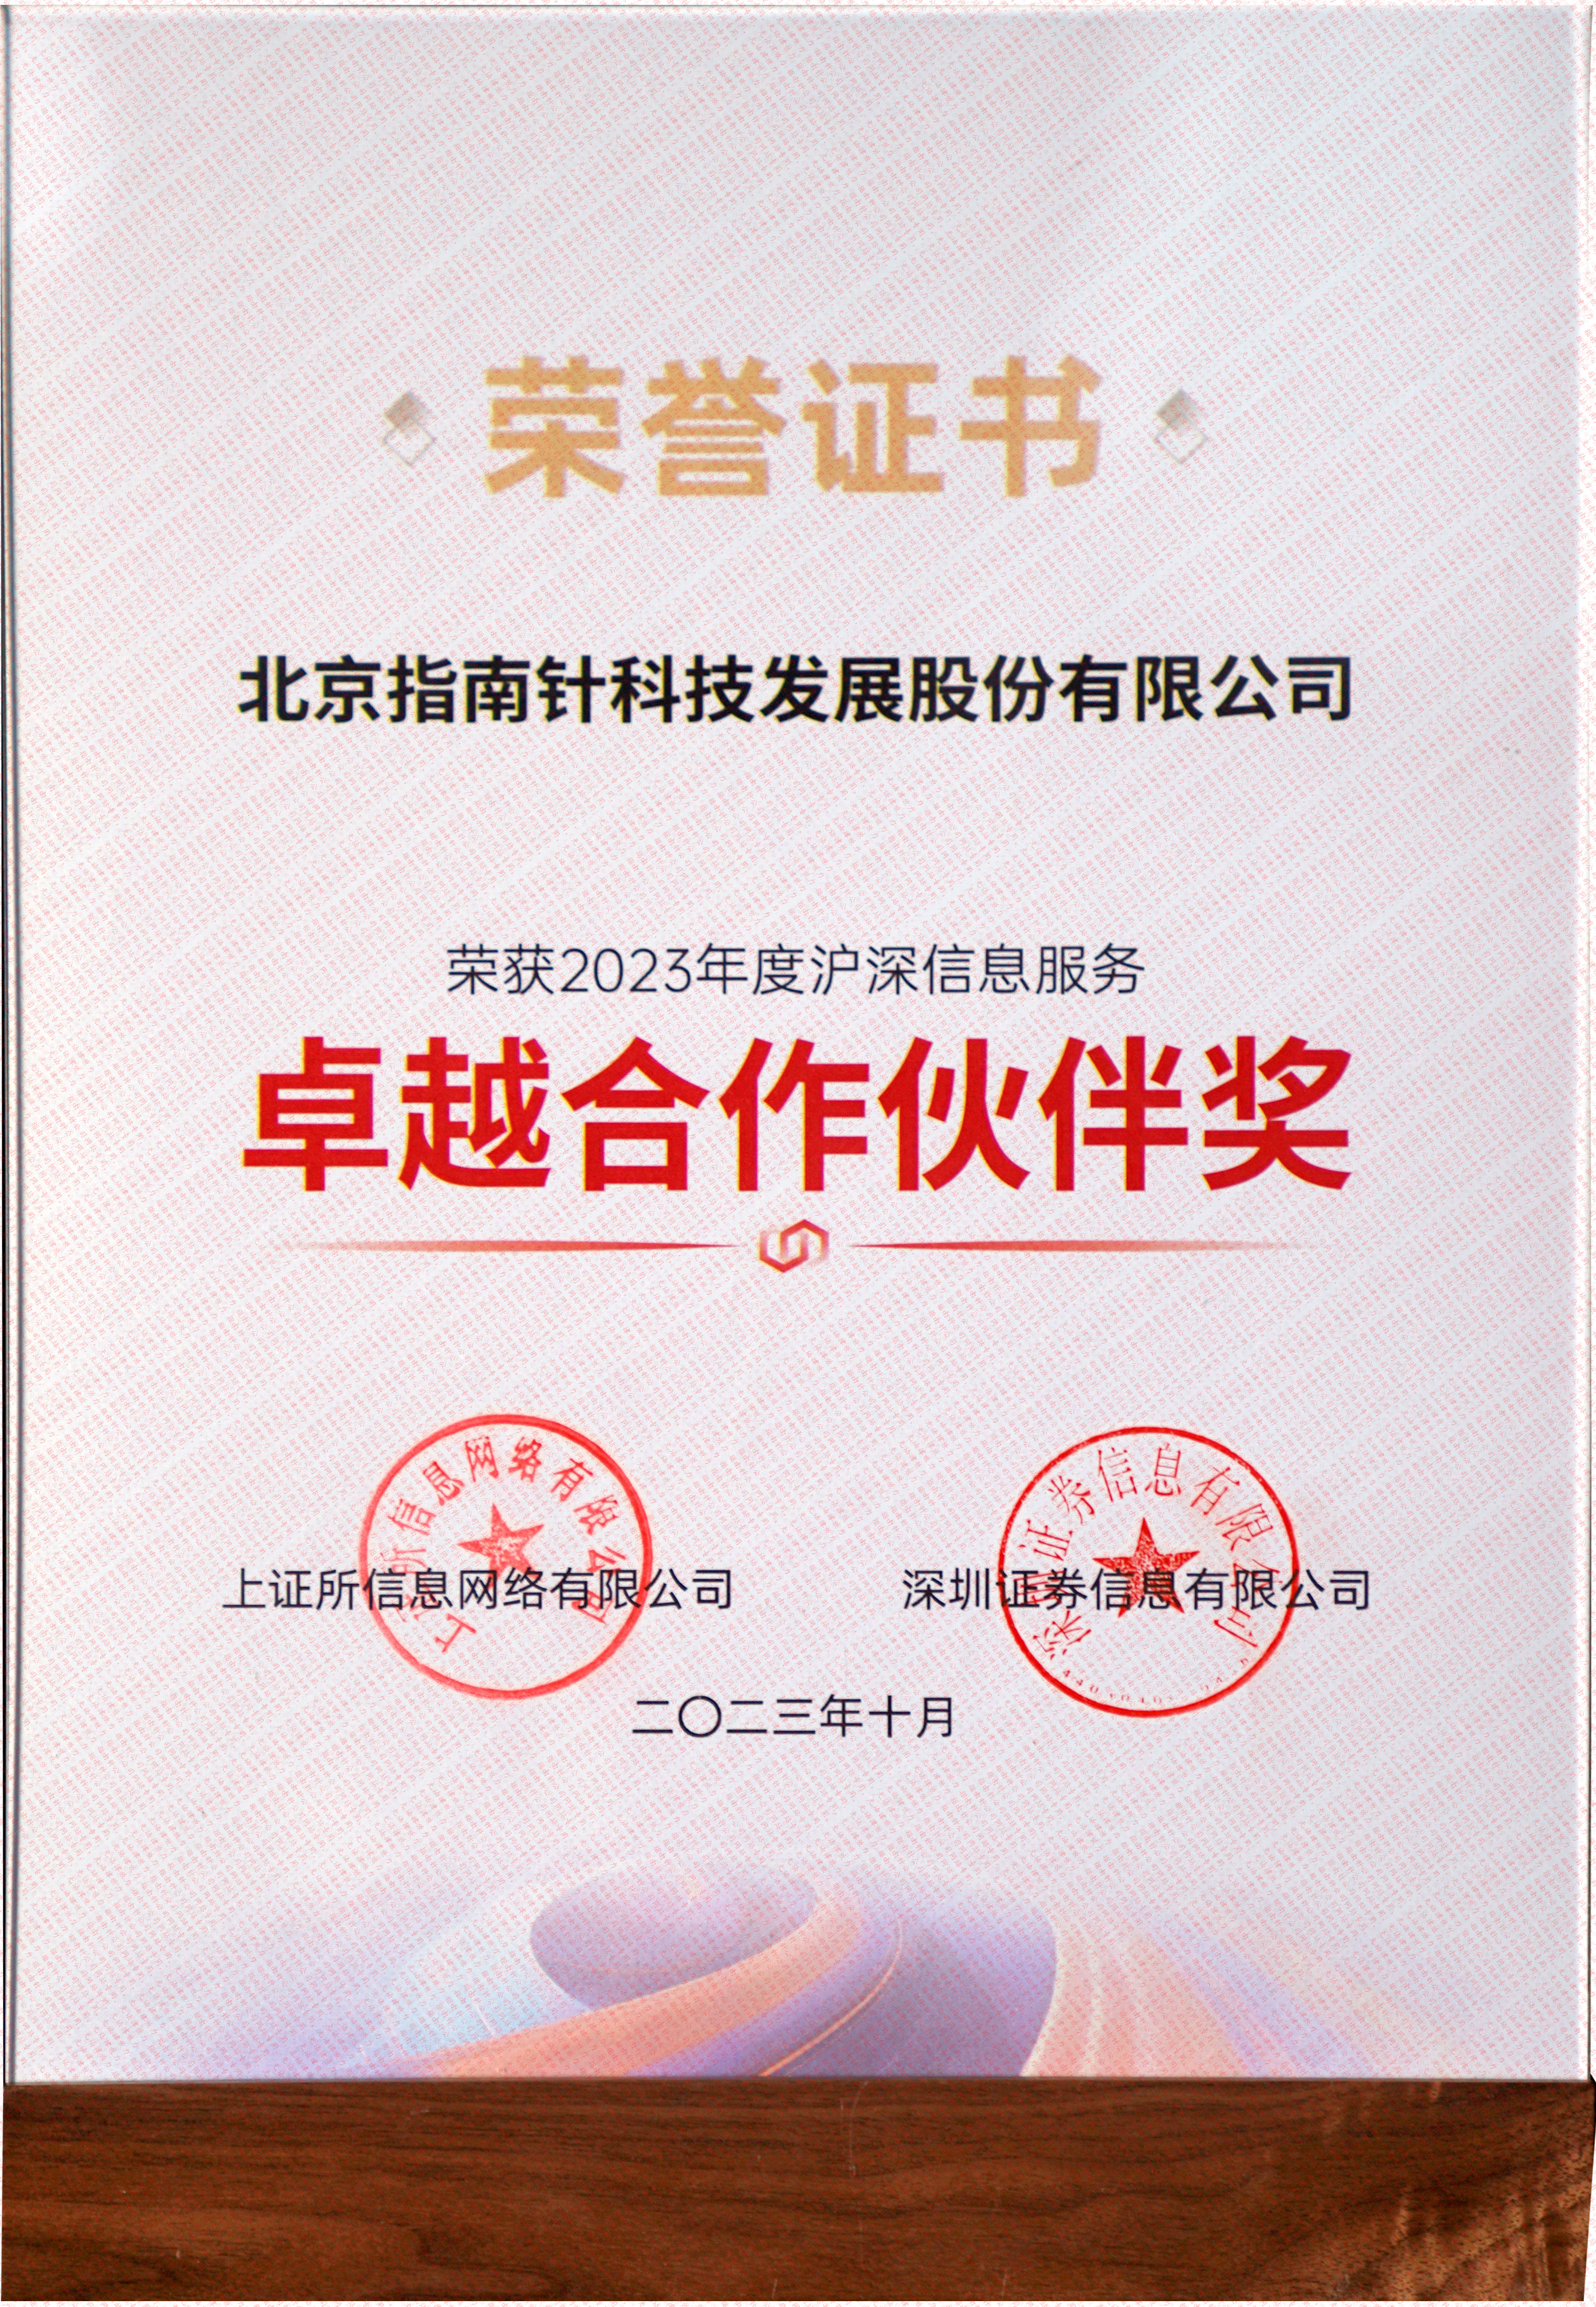 沪、深交易所信息公司2023年度沪深信息服务“卓越合作伙伴奖”